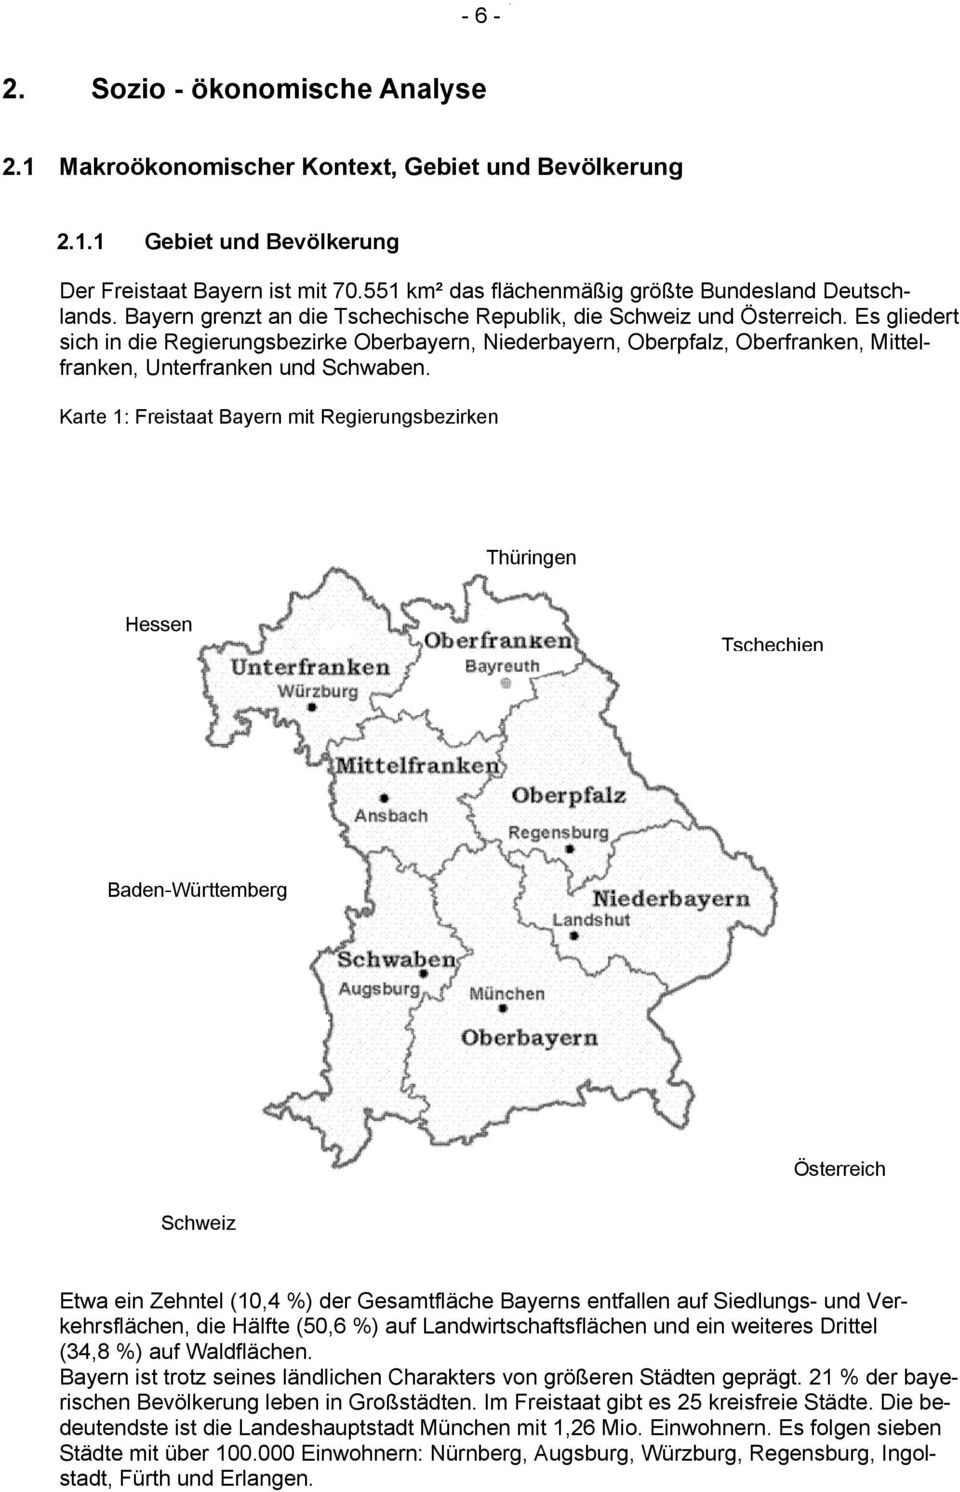 Es gliedert sich in die Regierungsbezirke Oberbayern, Niederbayern, Oberpfalz, Oberfranken, Mittelfranken, Unterfranken und Schwaben.